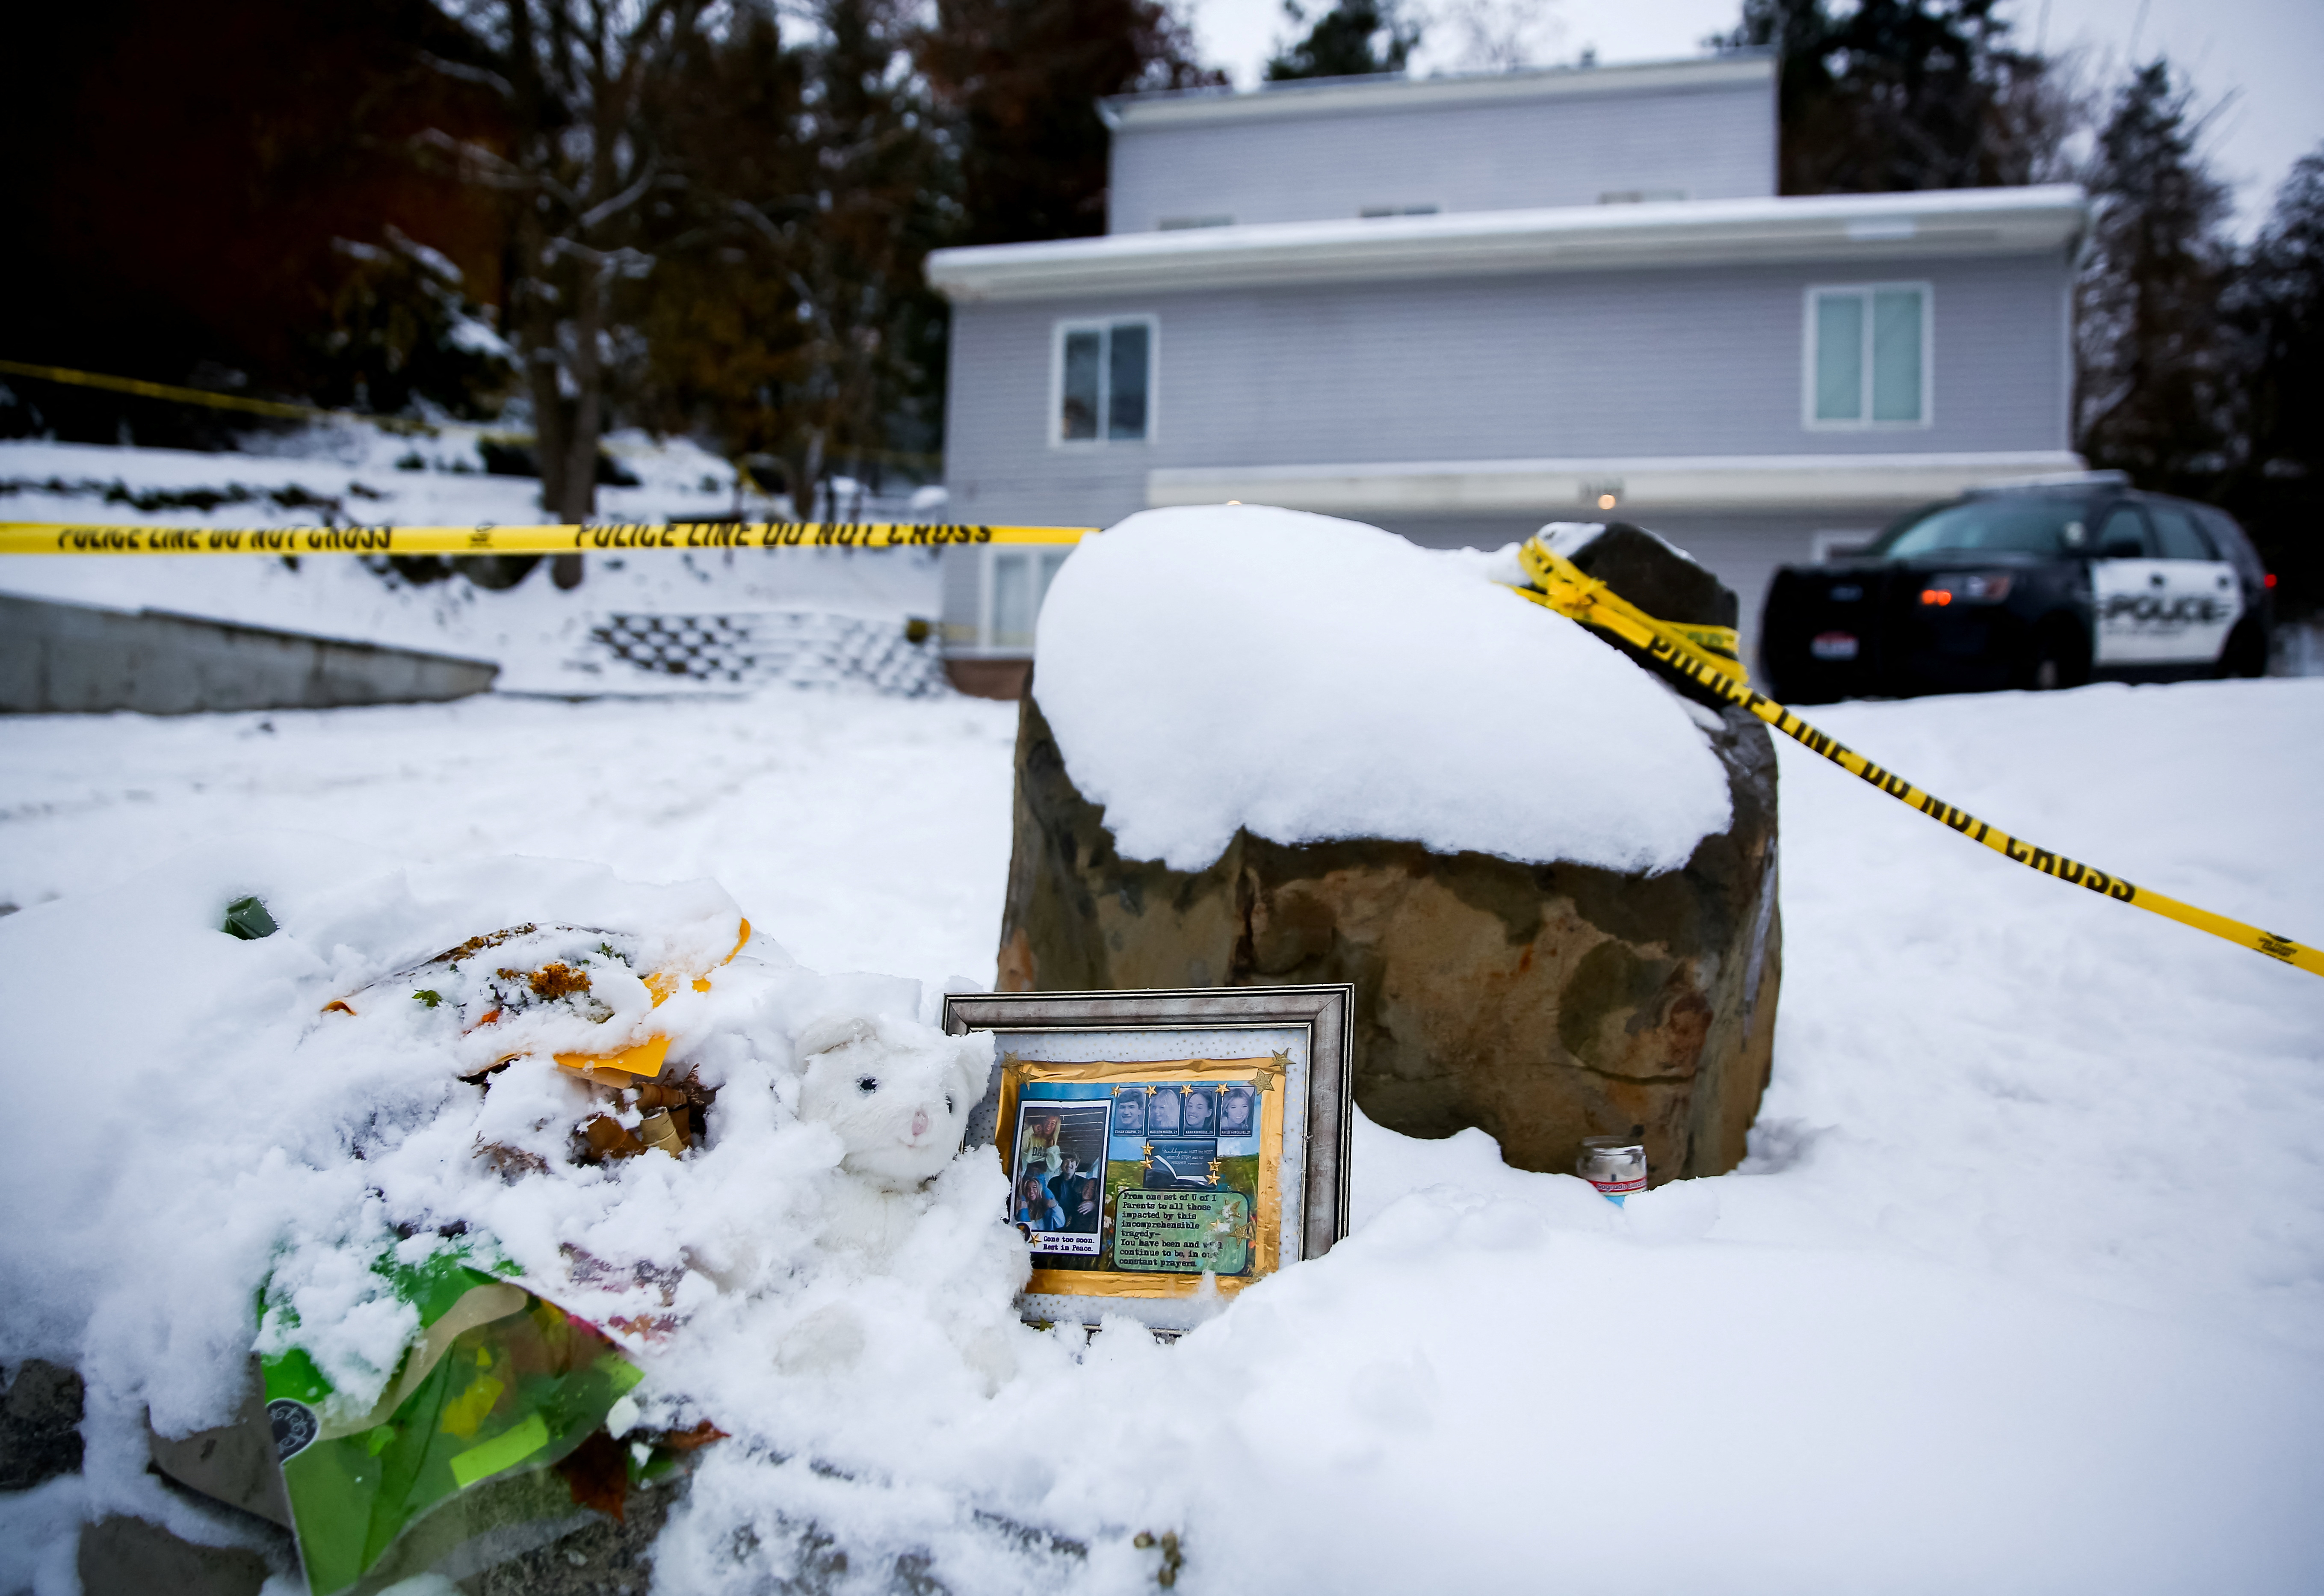 La policía corrigió su versión sobre la muerte de 4 estudiantes de Idaho; no sabe si “la casa o los ocupantes fueron atacados”